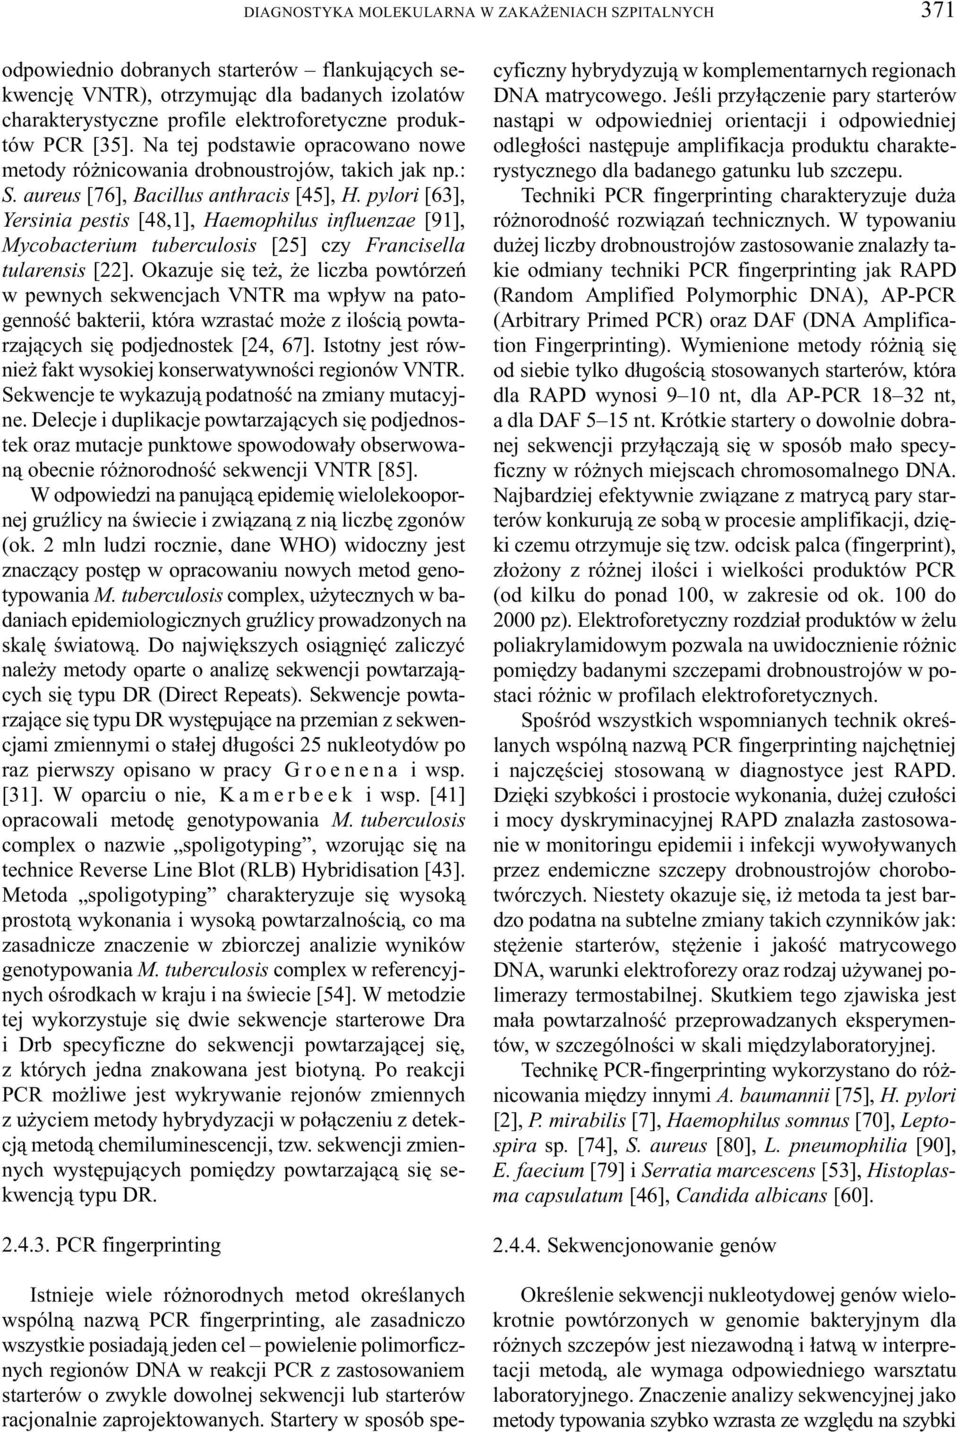 pylori [63], Yersinia pestis [48,1], Haemophilus influenzae [91], Mycobacterium tuberculosis [25] czy Francisella tularensis [22].